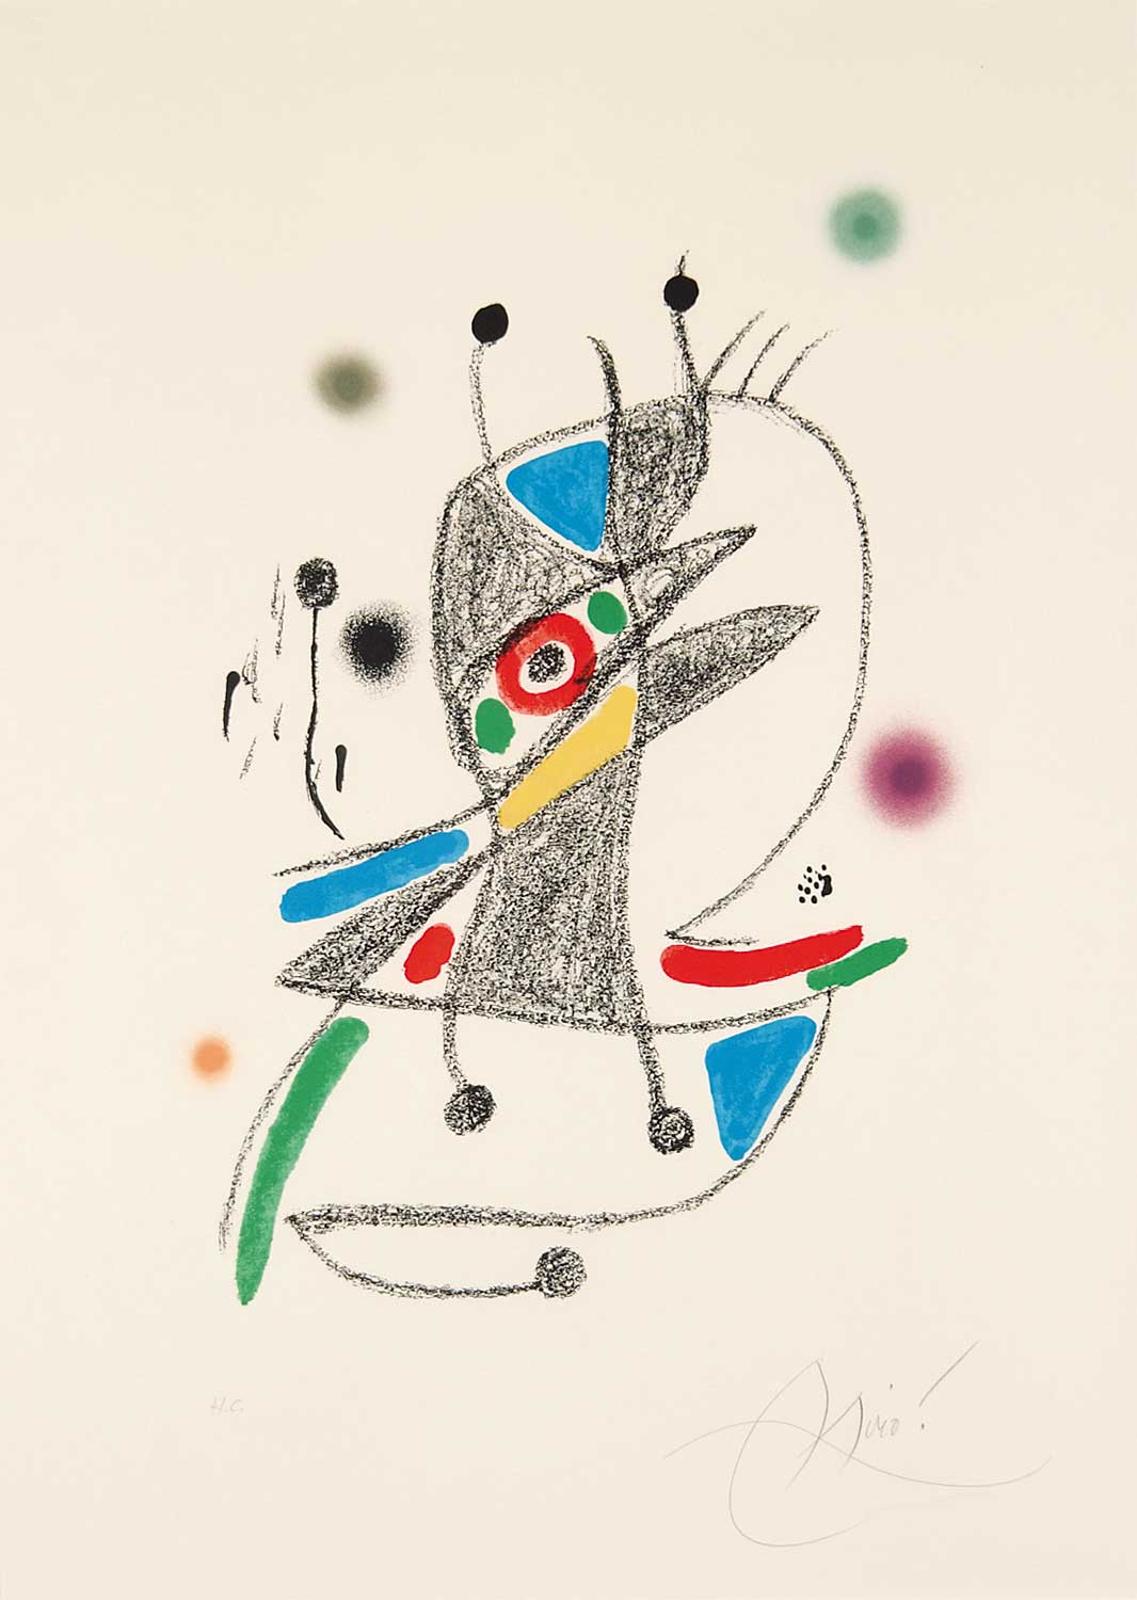 Joan Miró (1893-1983) - Maravillas con Variaciones Acrosticas en el jardin de Miro [Number 4]  #H.C.